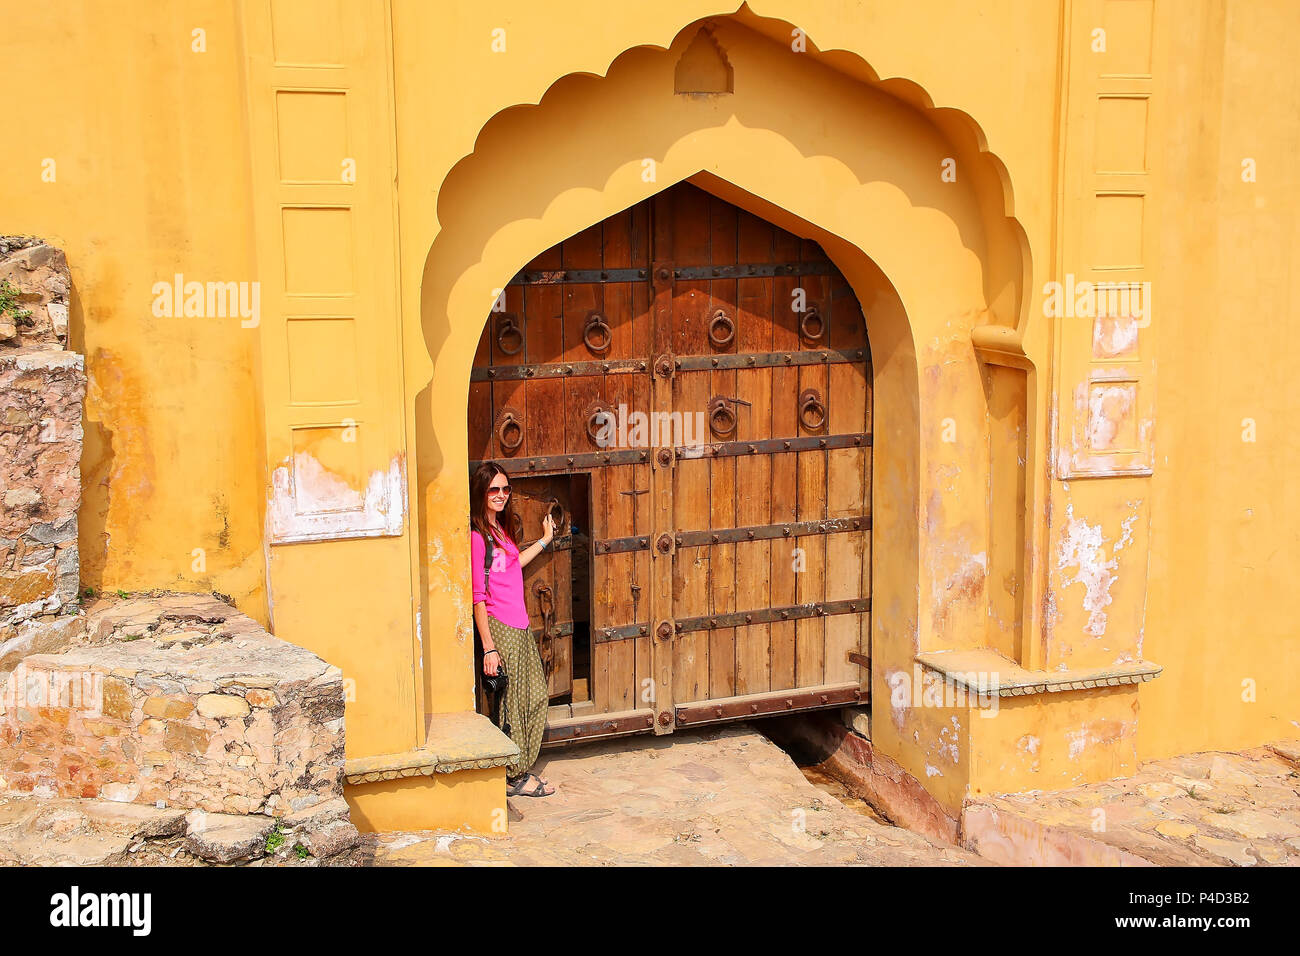 Jeune femme debout près de la porte à l'Amber Fort près de Jaipur, Rajasthan, Inde. Fort Amber est la principale attraction touristique dans la région de Jaipur. Banque D'Images